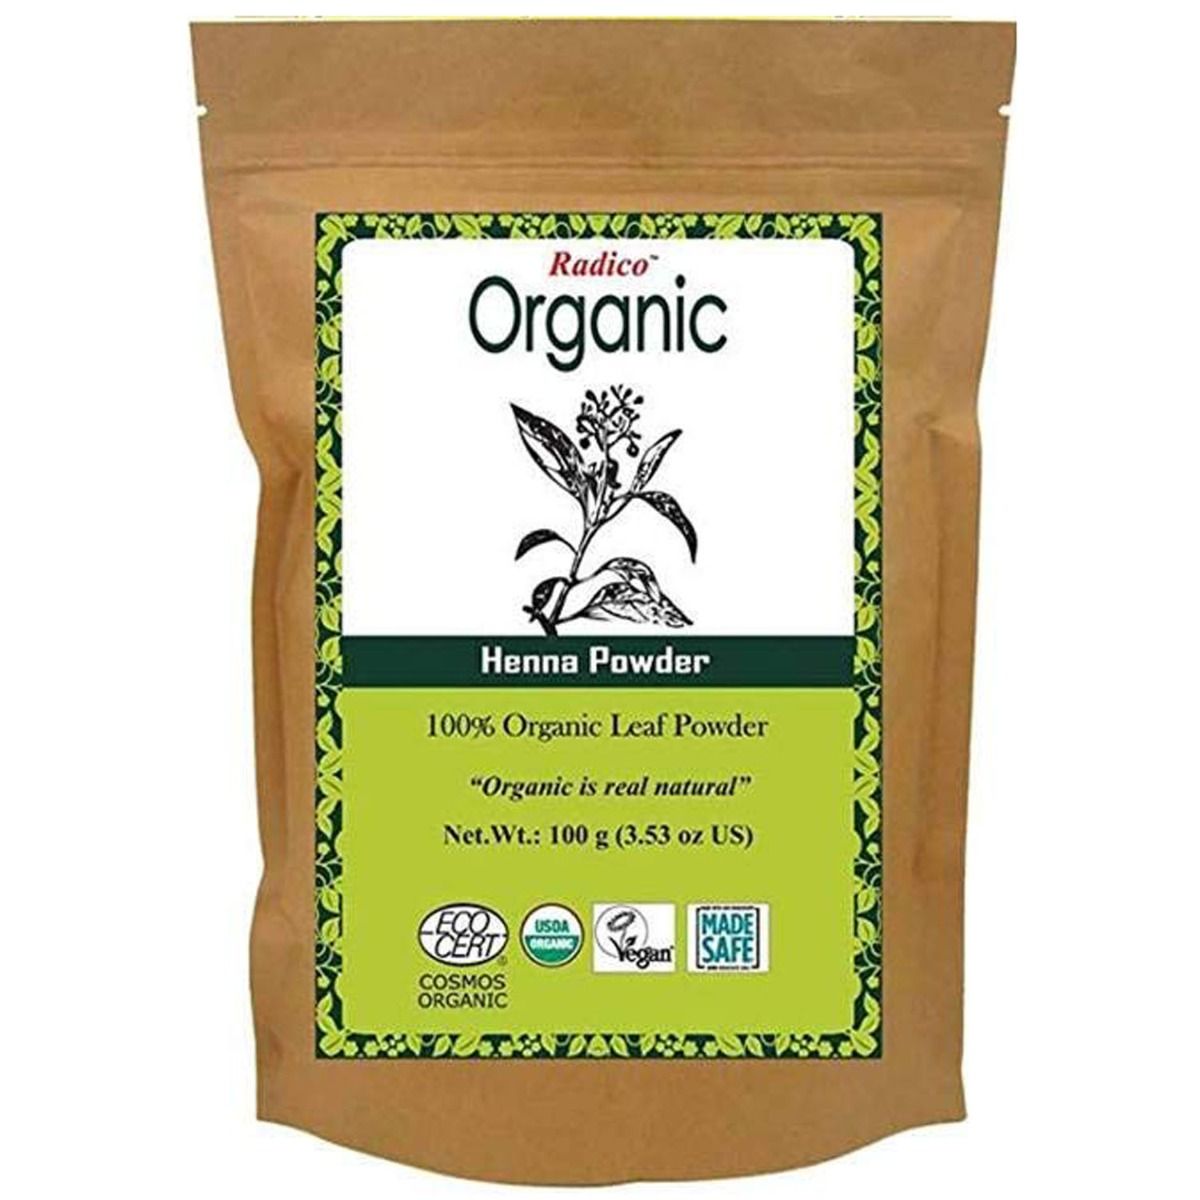 Buy Radico Organic Henna Powder 100g Online